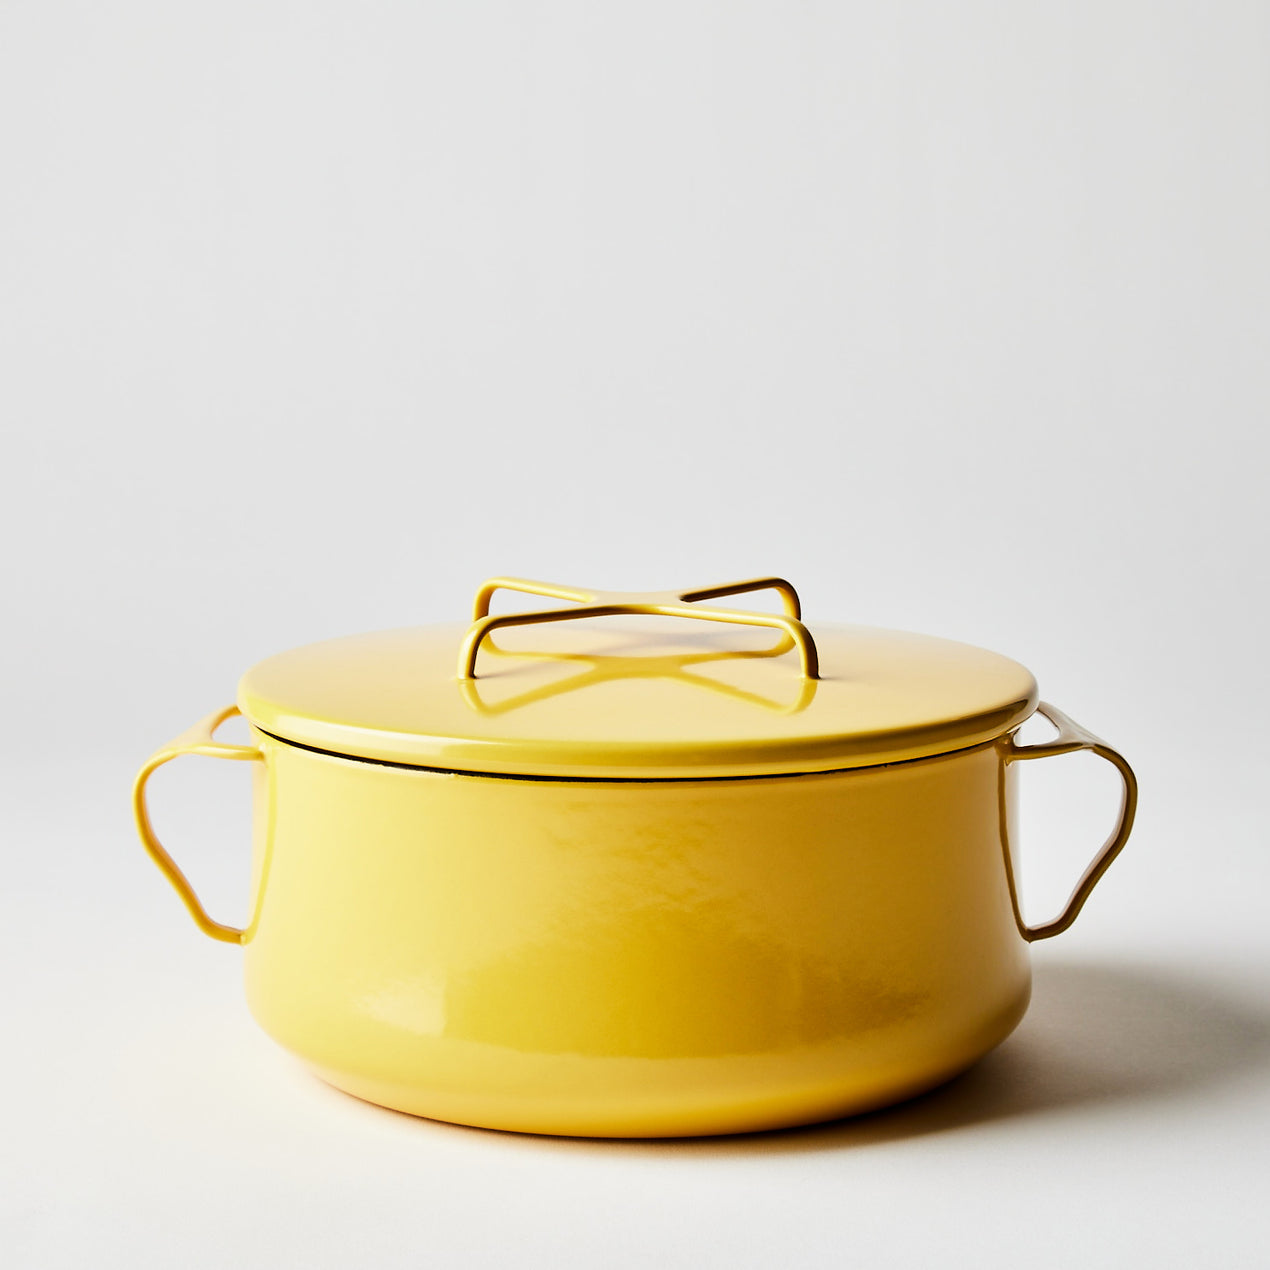 https://www.dansk.com/cdn/shop/products/2022-0308_dansk_kobenstyle-casserole-with-lid_yellow-4-qt_silo_ty-mecham_1270x.jpg?v=1654830886